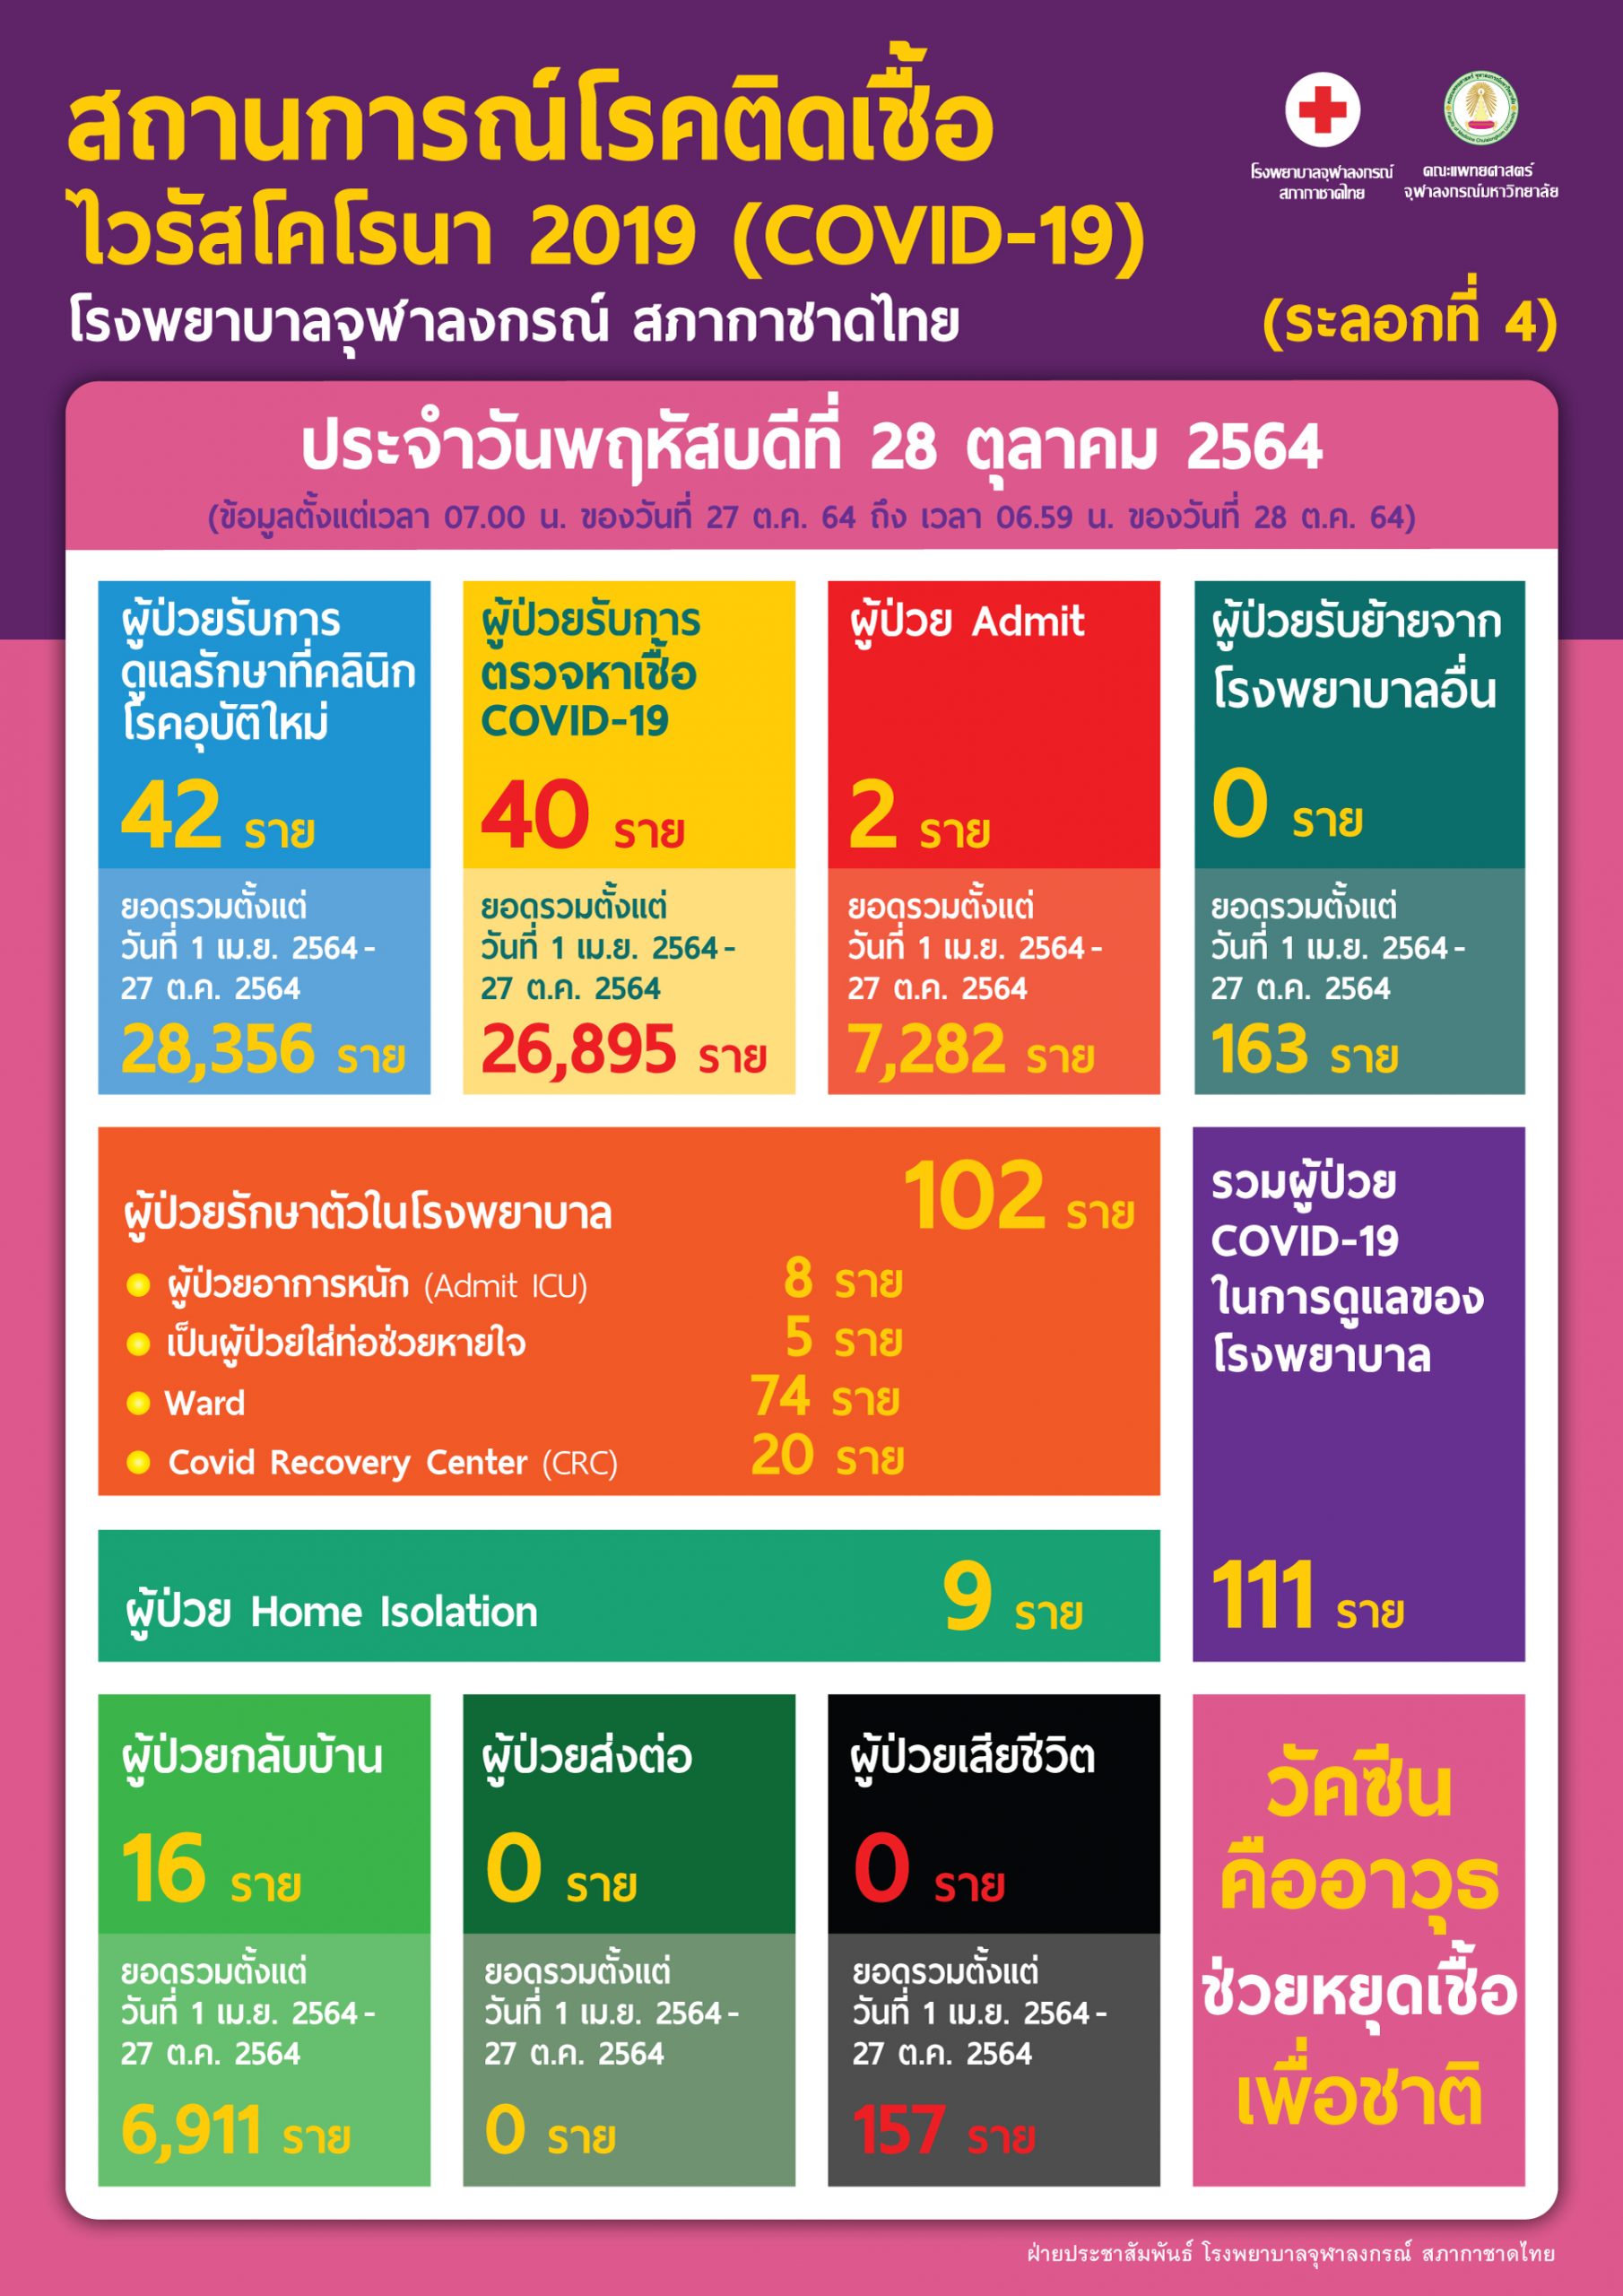 สถานการณ์โรคติดเชื้อไวรัสโคโรนา 2019 (COVID-19) (ระลอกที่ 4) โรงพยาบาลจุฬาลงกรณ์ สภากาชาดไทย  ประจำวันพฤหัสบดีที่ 28 ตุลาคม 2564